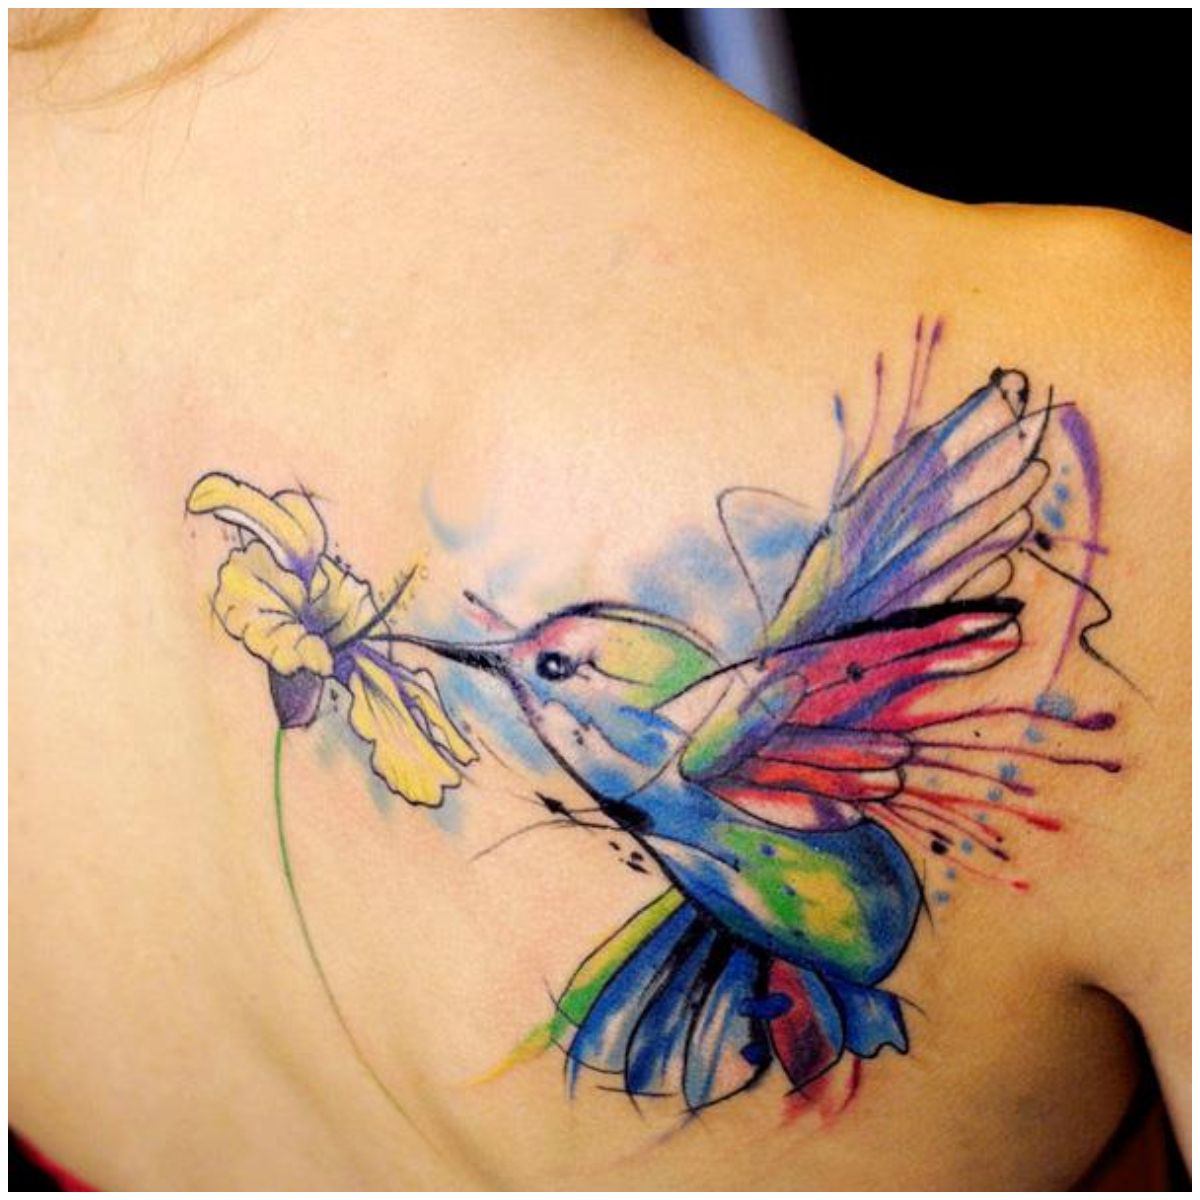 Hummingbird Tattoo Ideas - Best Tattoo Ideas Gallery